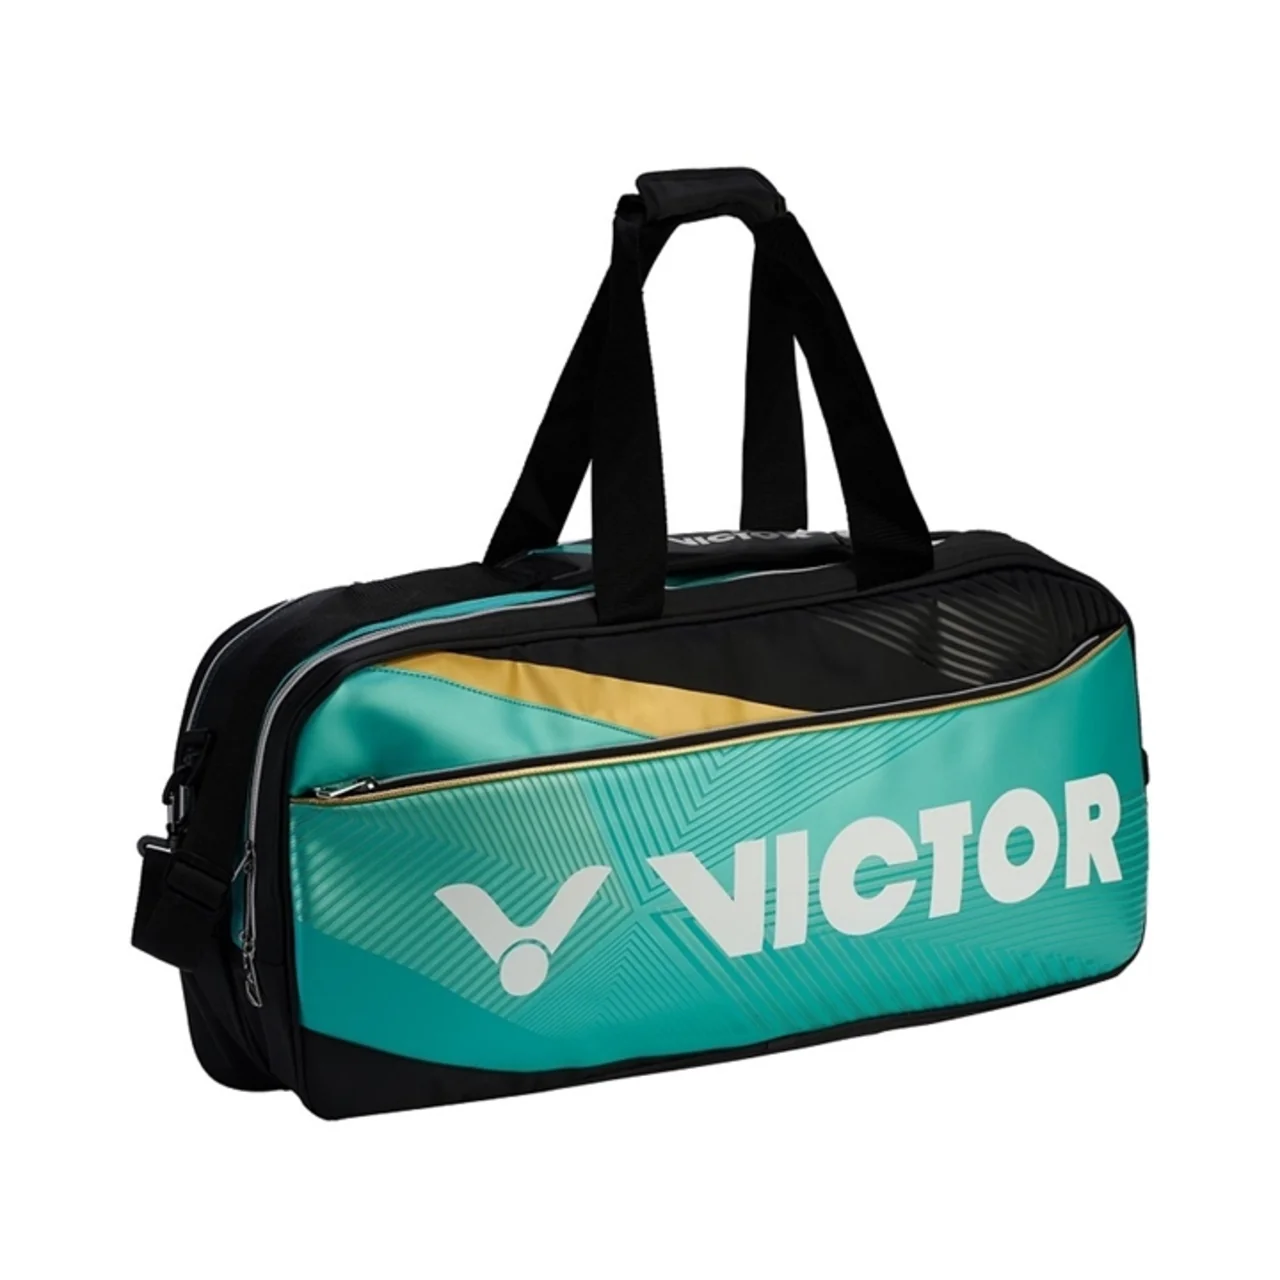 Victor Bag BR9609 Turquoise/Black